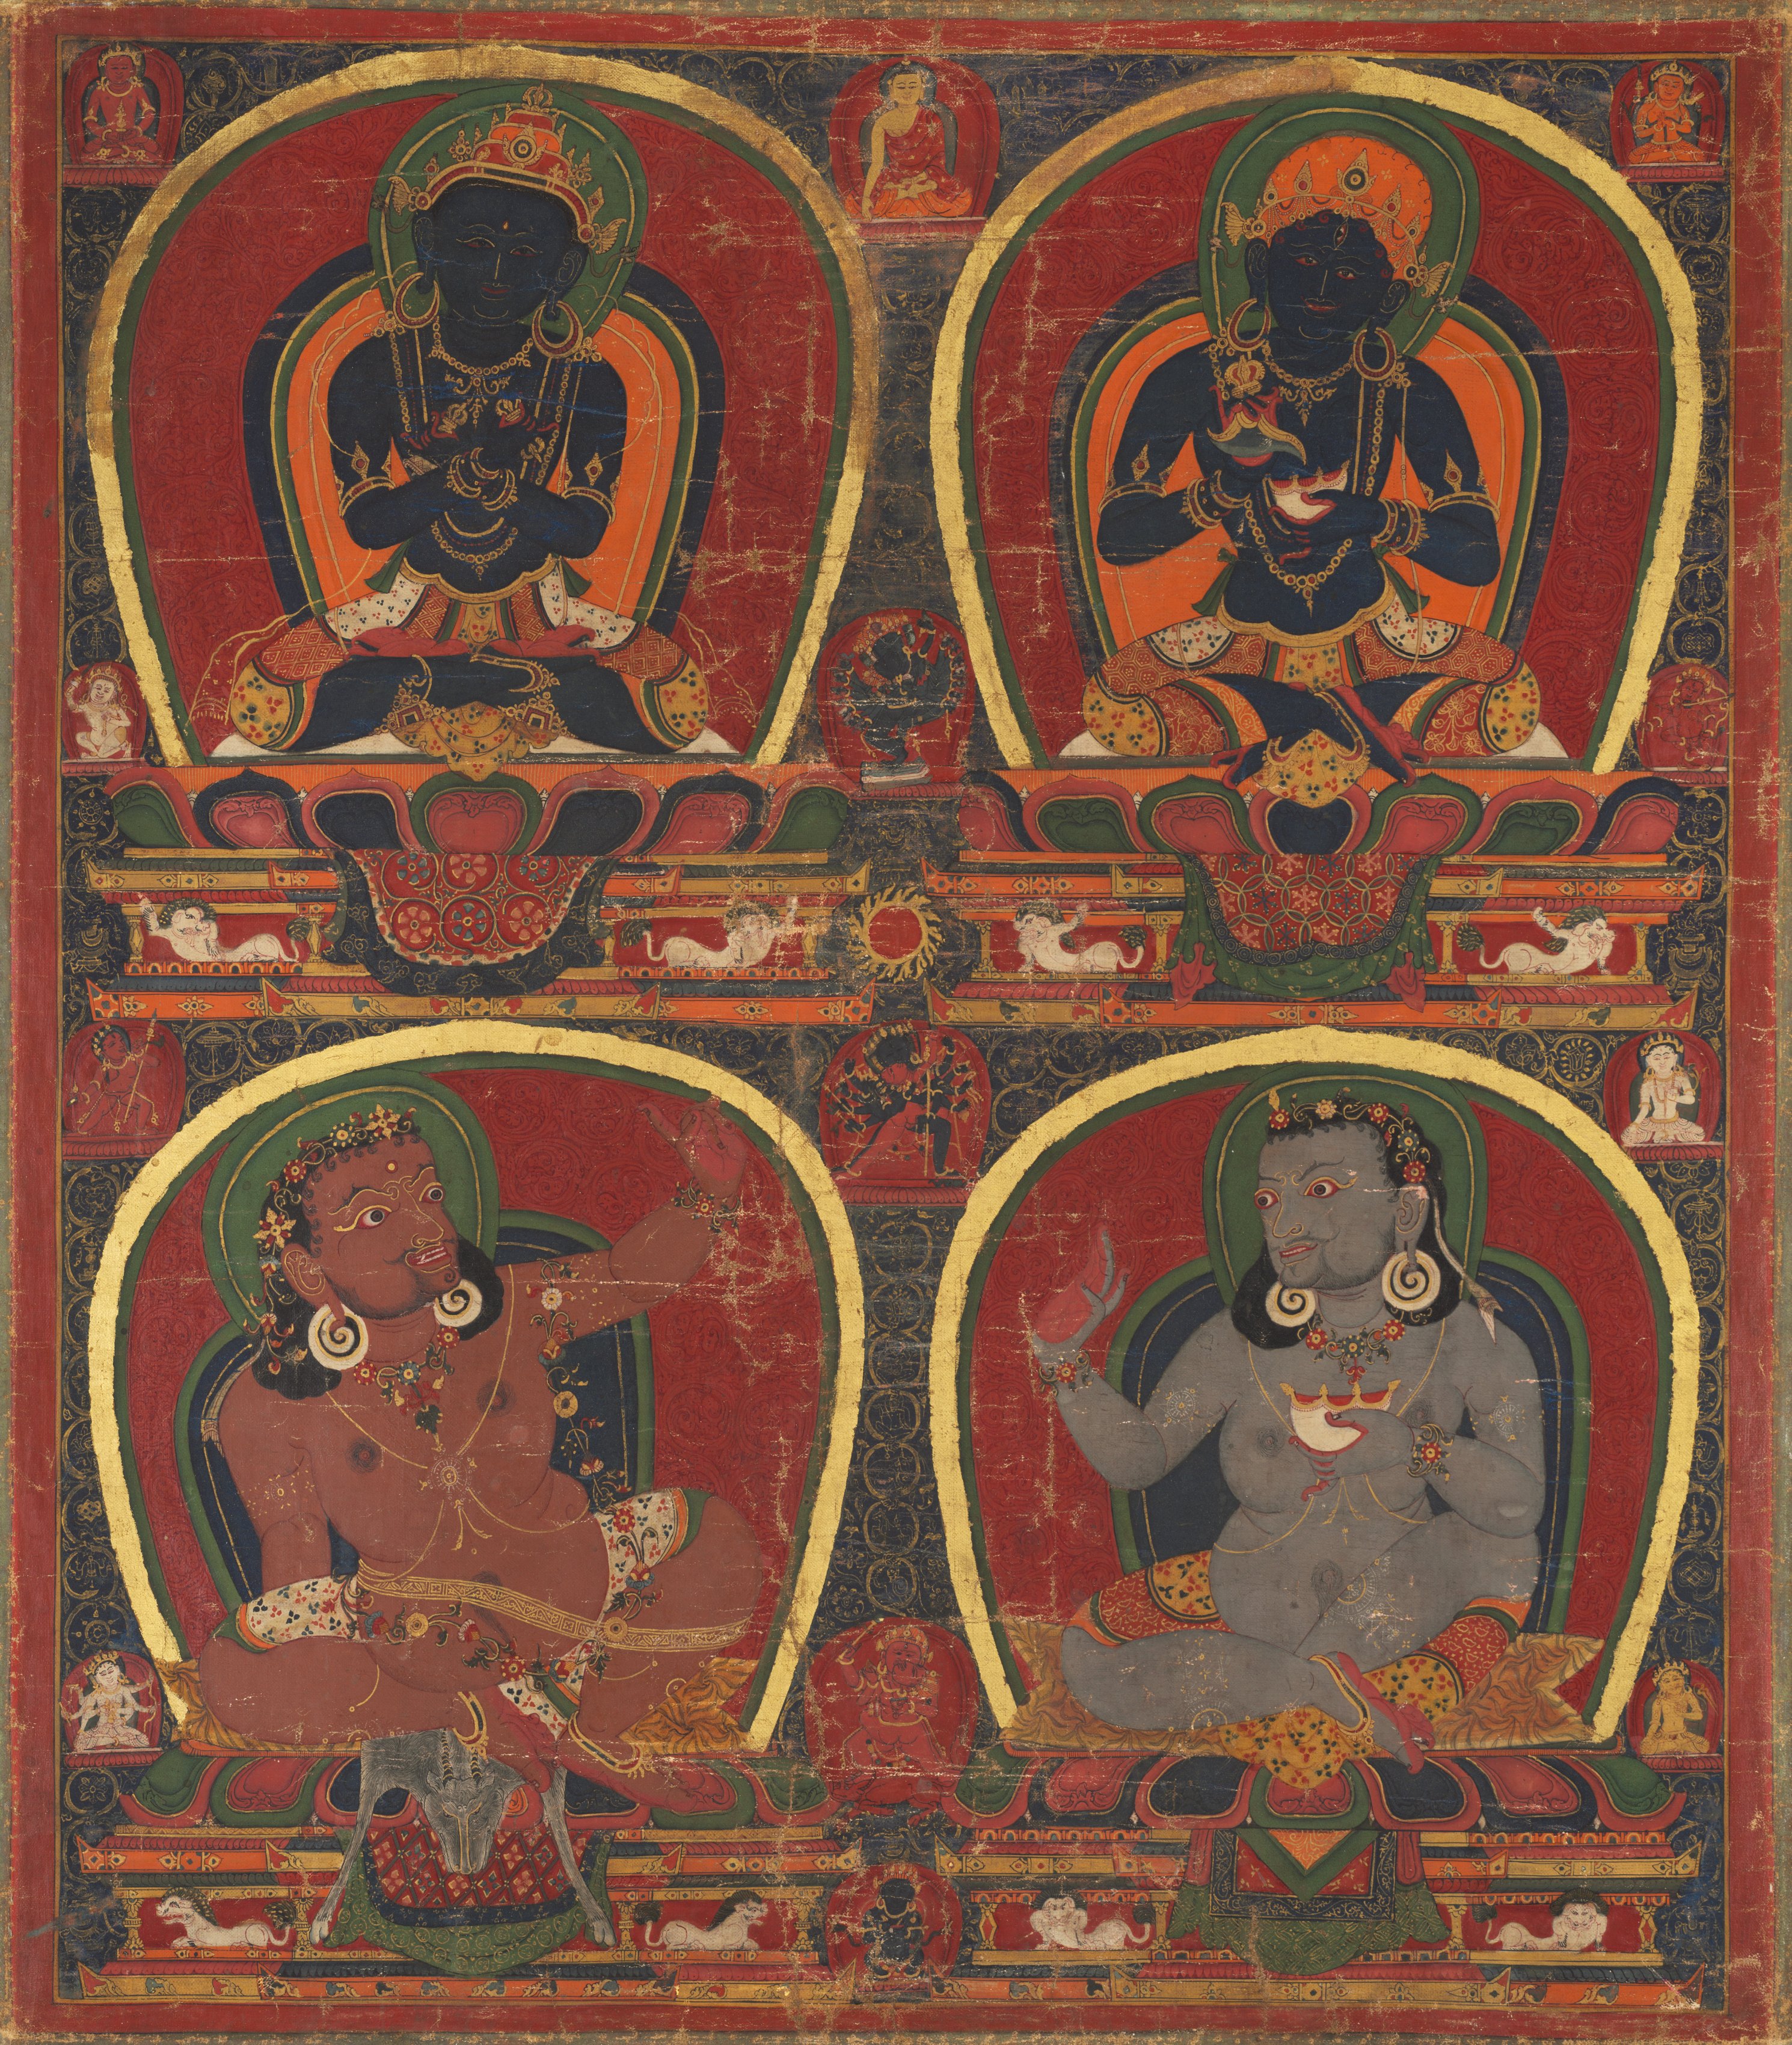 Vajradhara, Nairatmya, and Mahasiddhas Virupa and Kanha